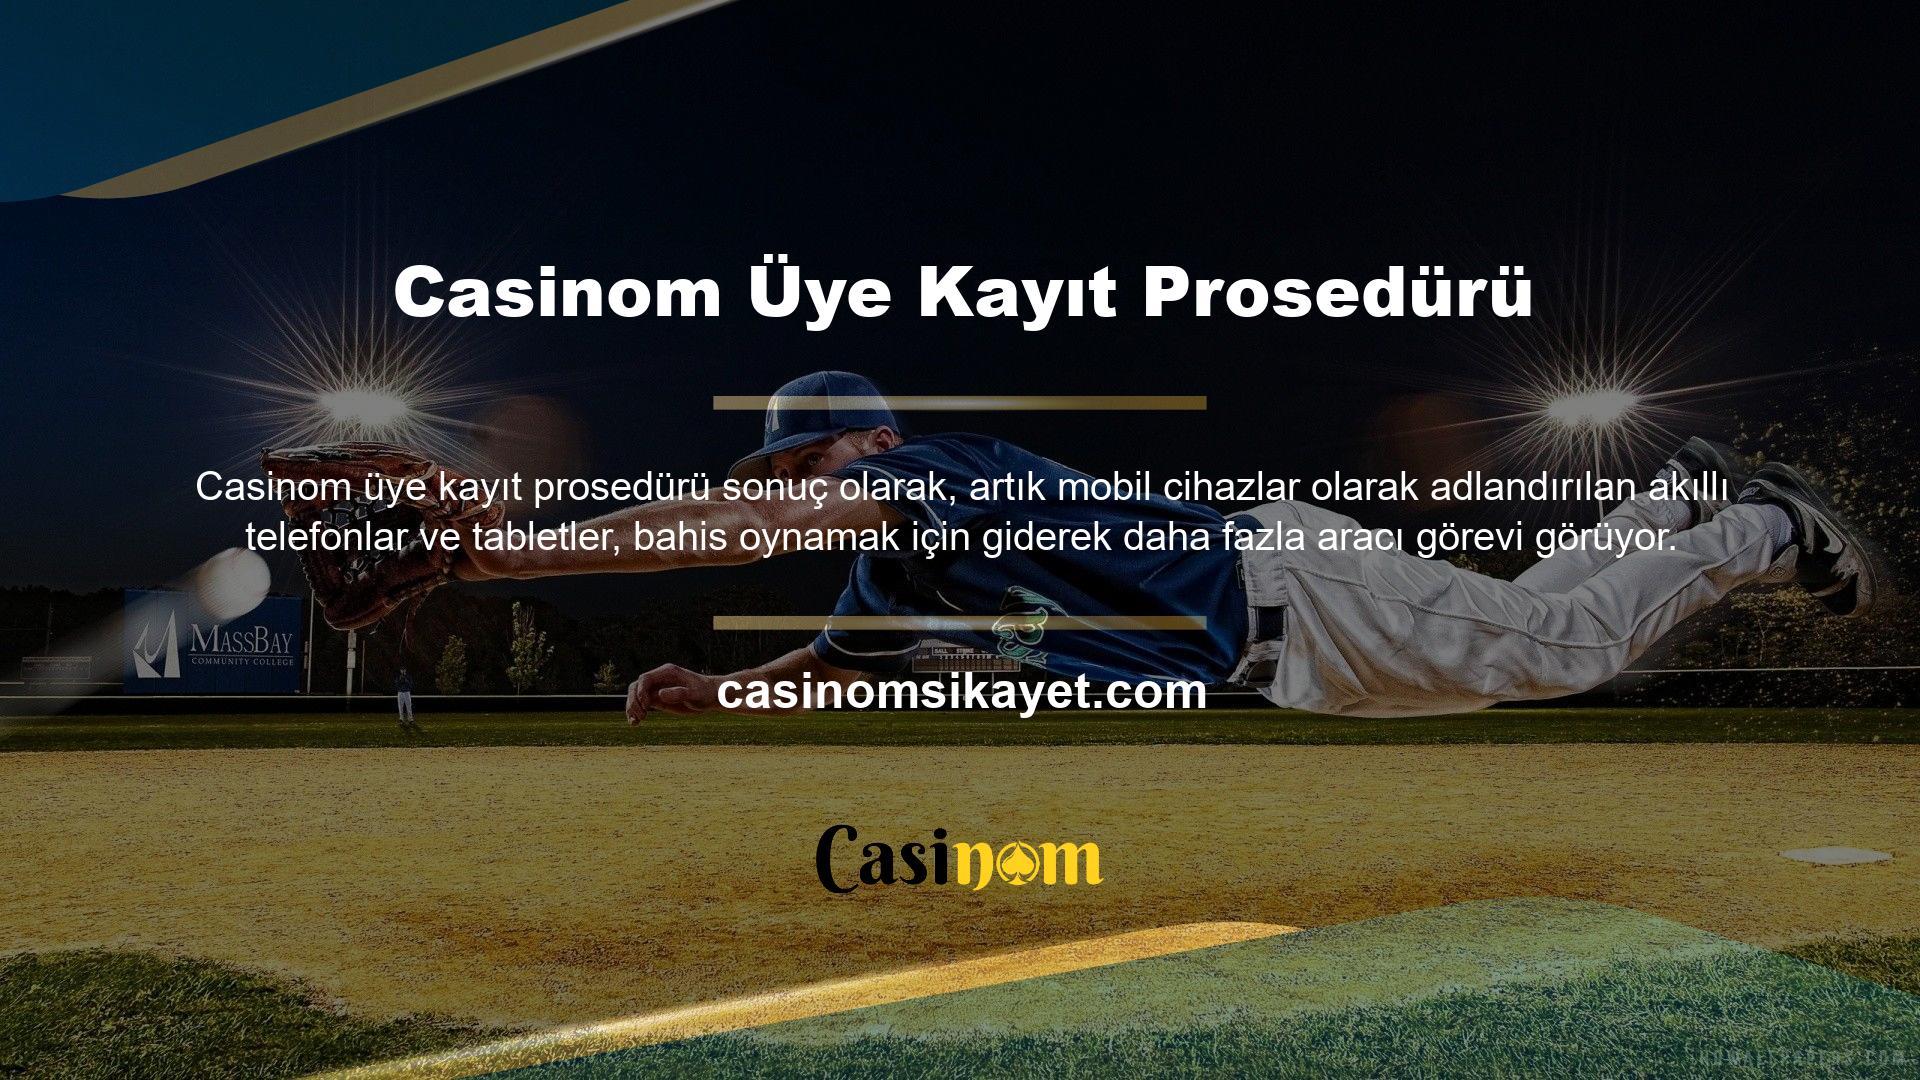 Casinom bahis sitesi oldukça güvenli bir yapıya sahiptir ve Türkiye'de ve birçok Avrupa ülkesinde lisanslı olarak yayın yapmaktadır